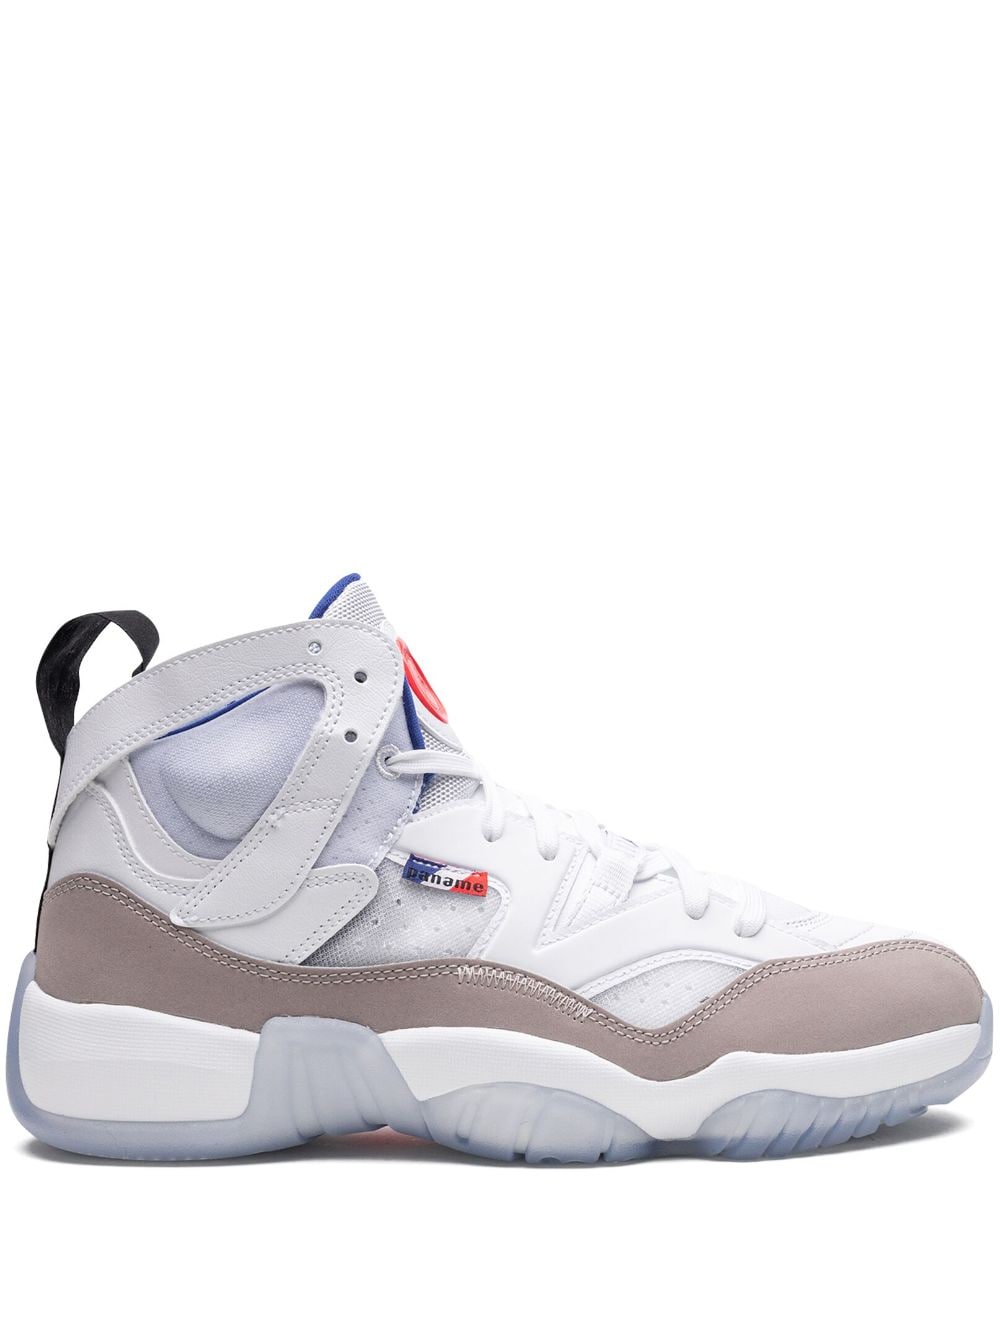 Jordan x PSG Jumpman Two Trey sneakers - White